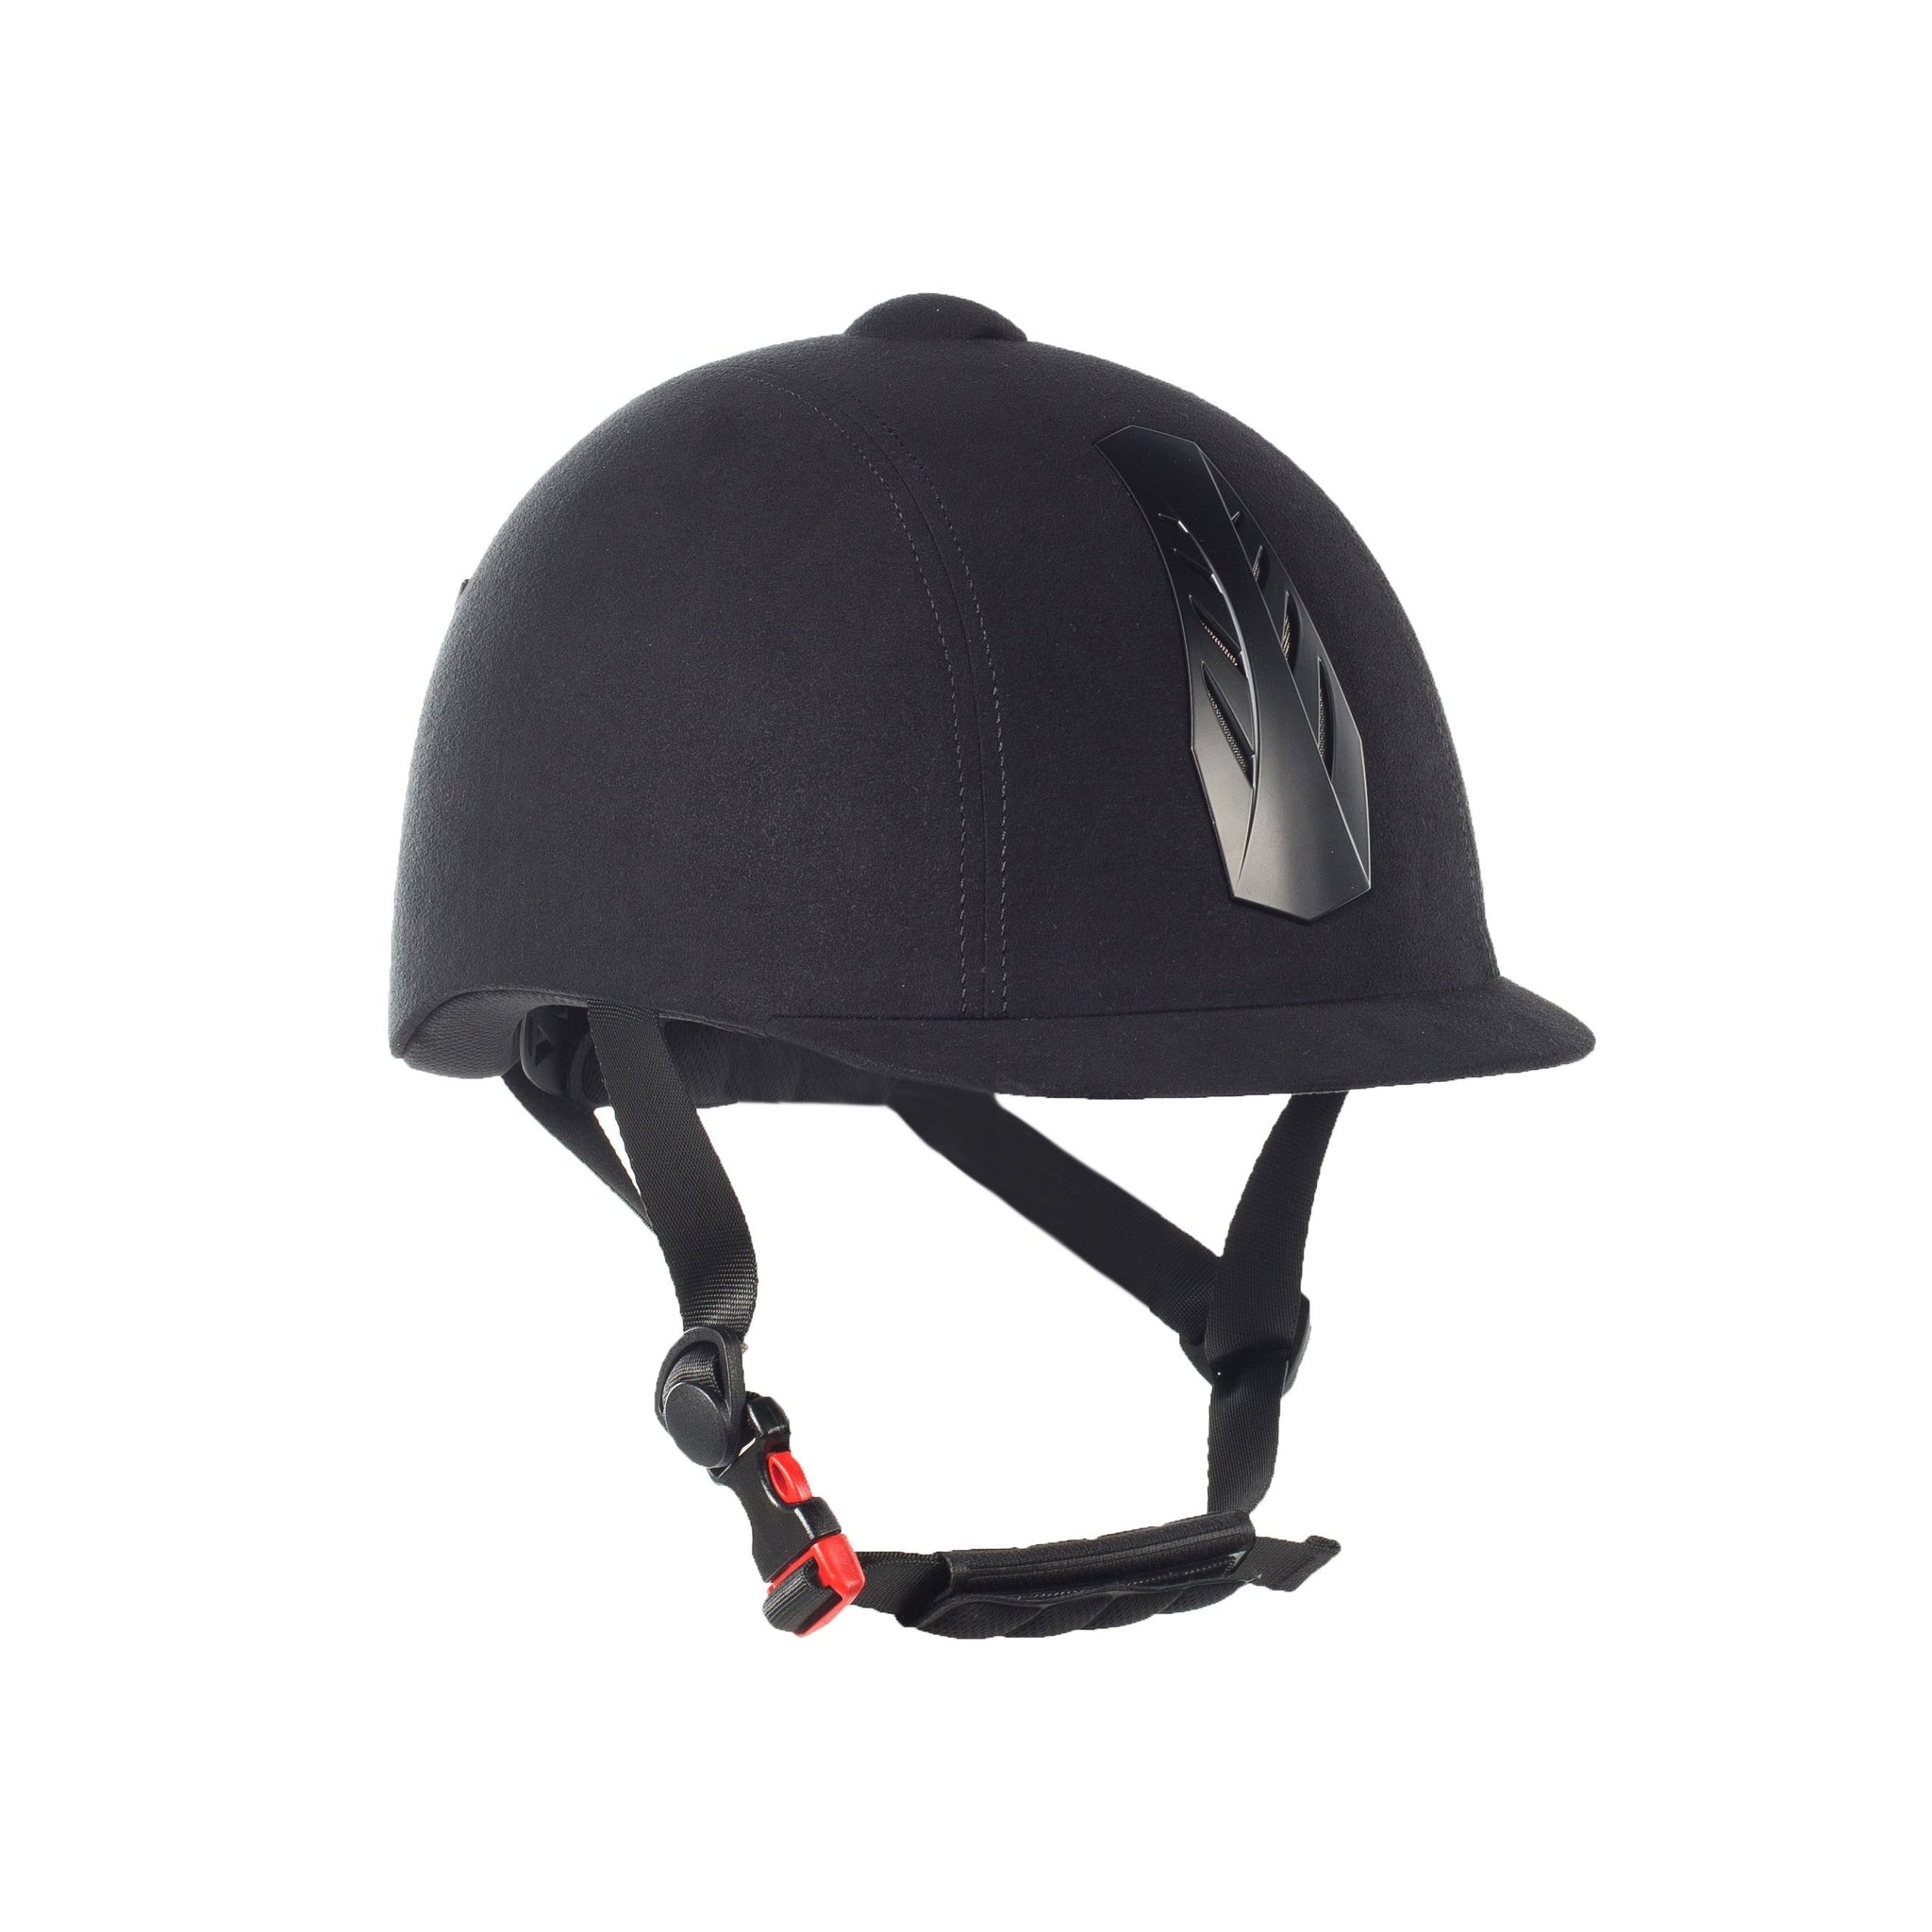 Triton Helmet Black